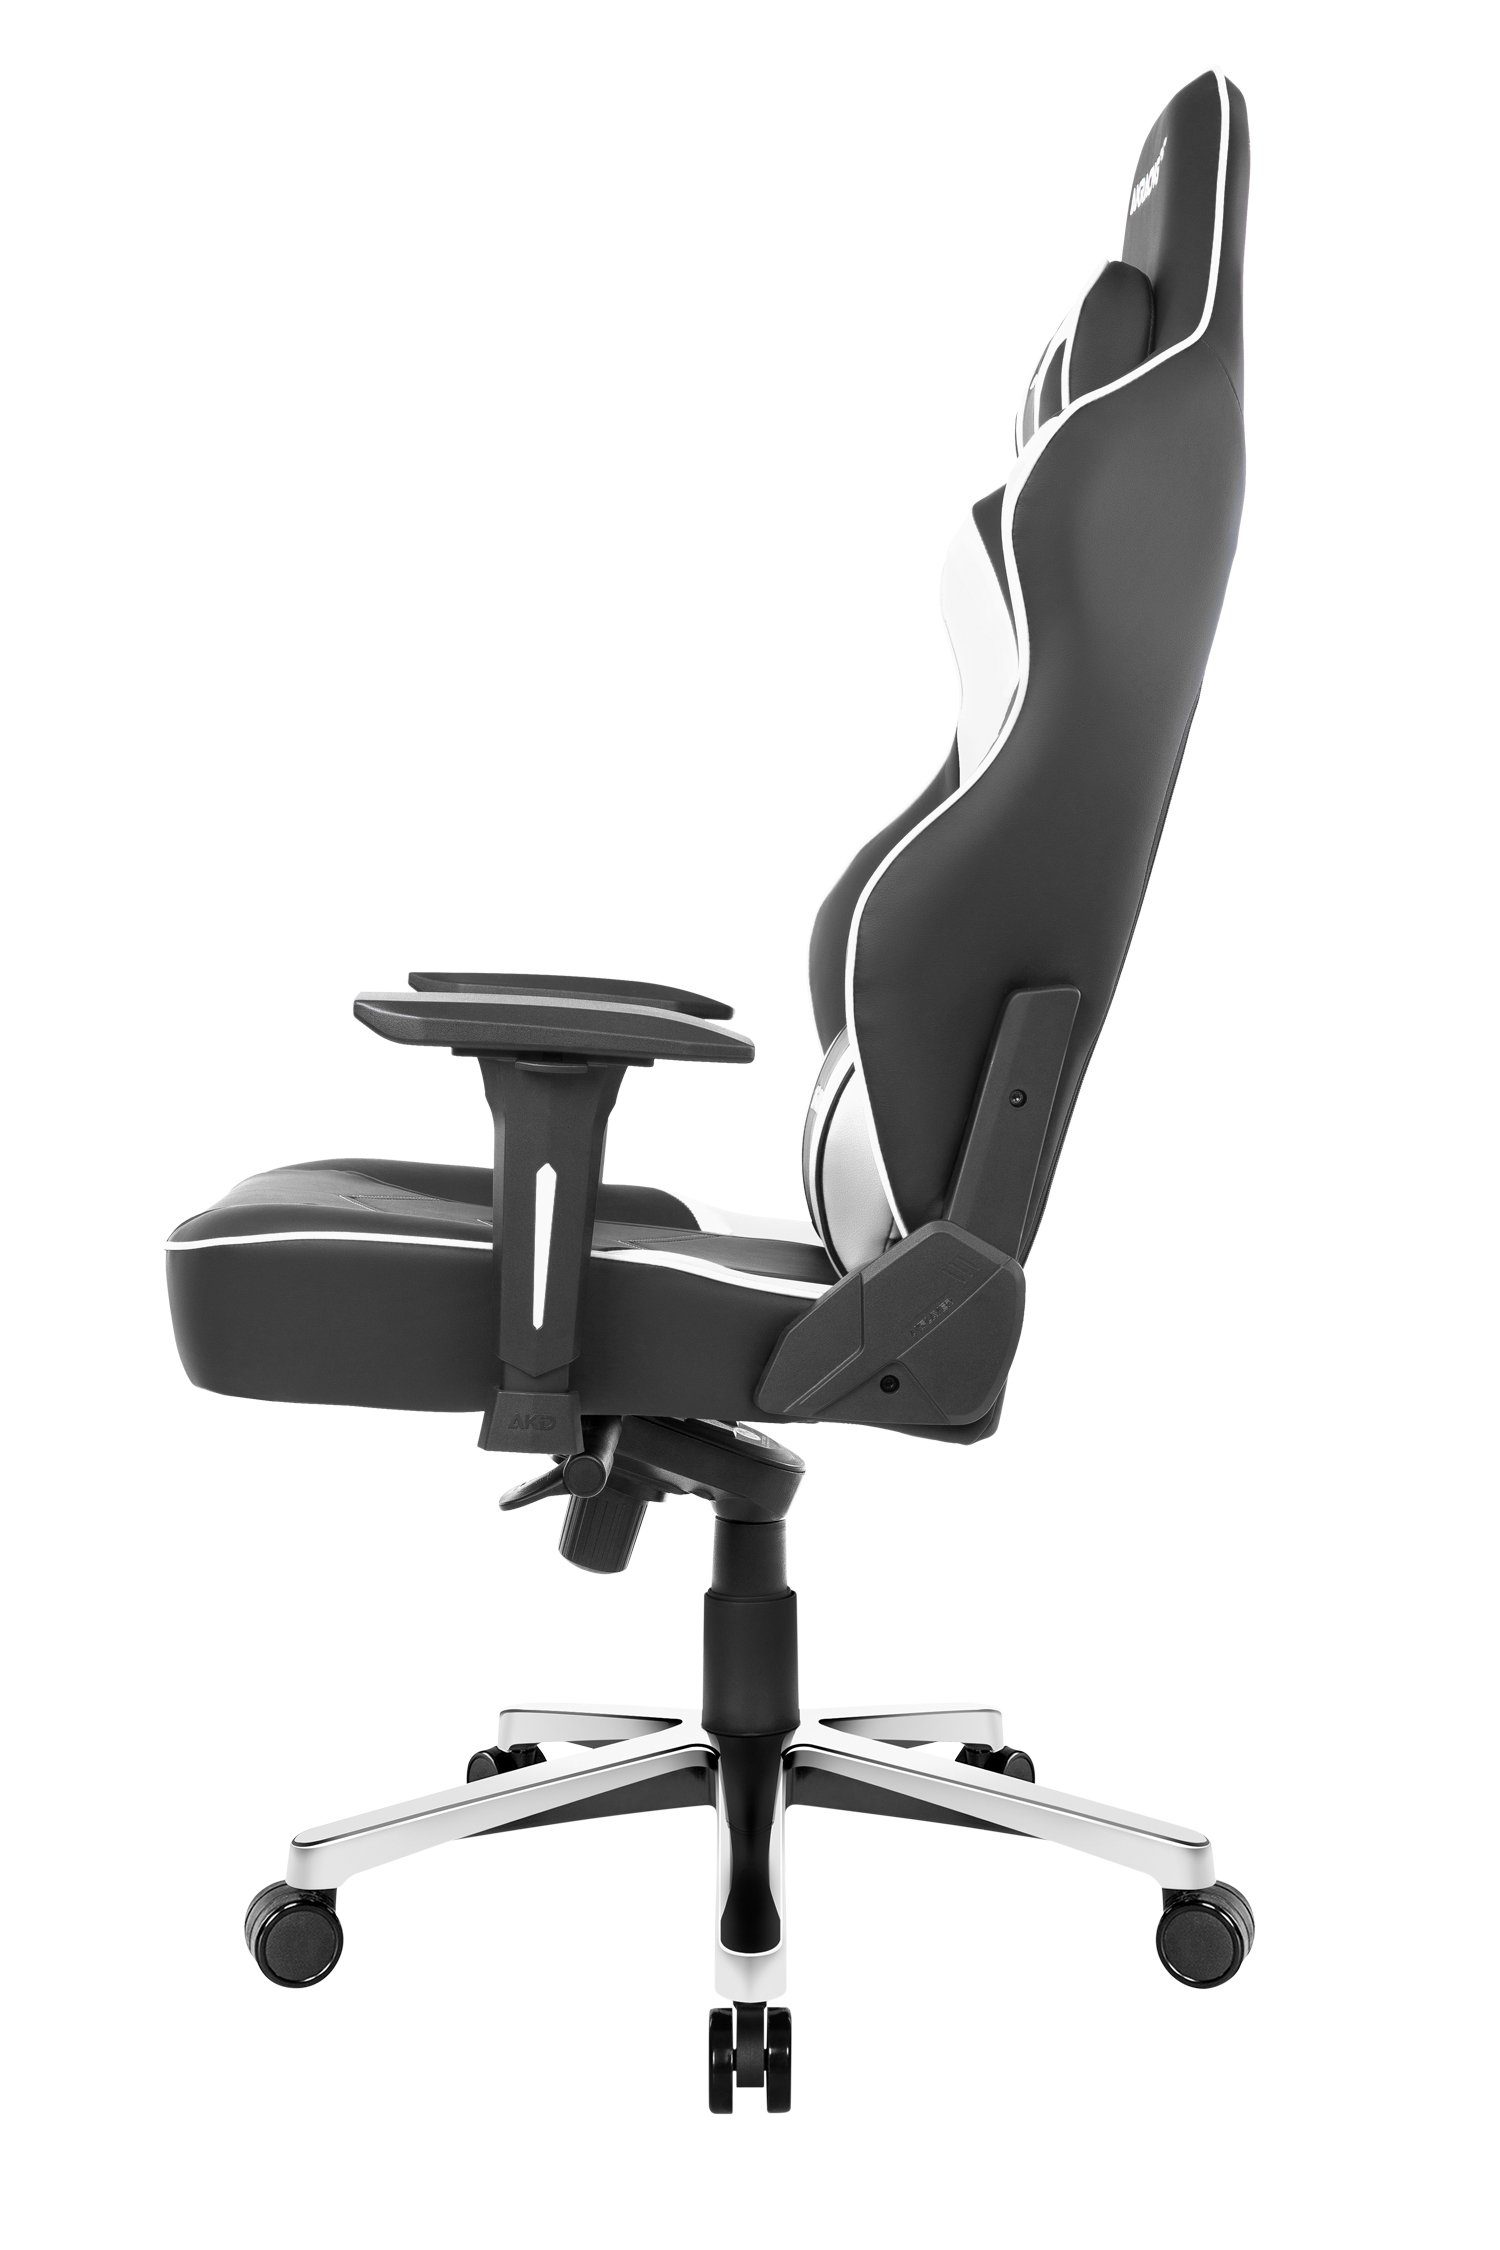 ergonomisch, für höhenverstellbar schwere Kunstleder, hochwertiges "AKRACING Bürostuhl AKRacing Personen Max" weiß Gaming-Stuhl und große Master